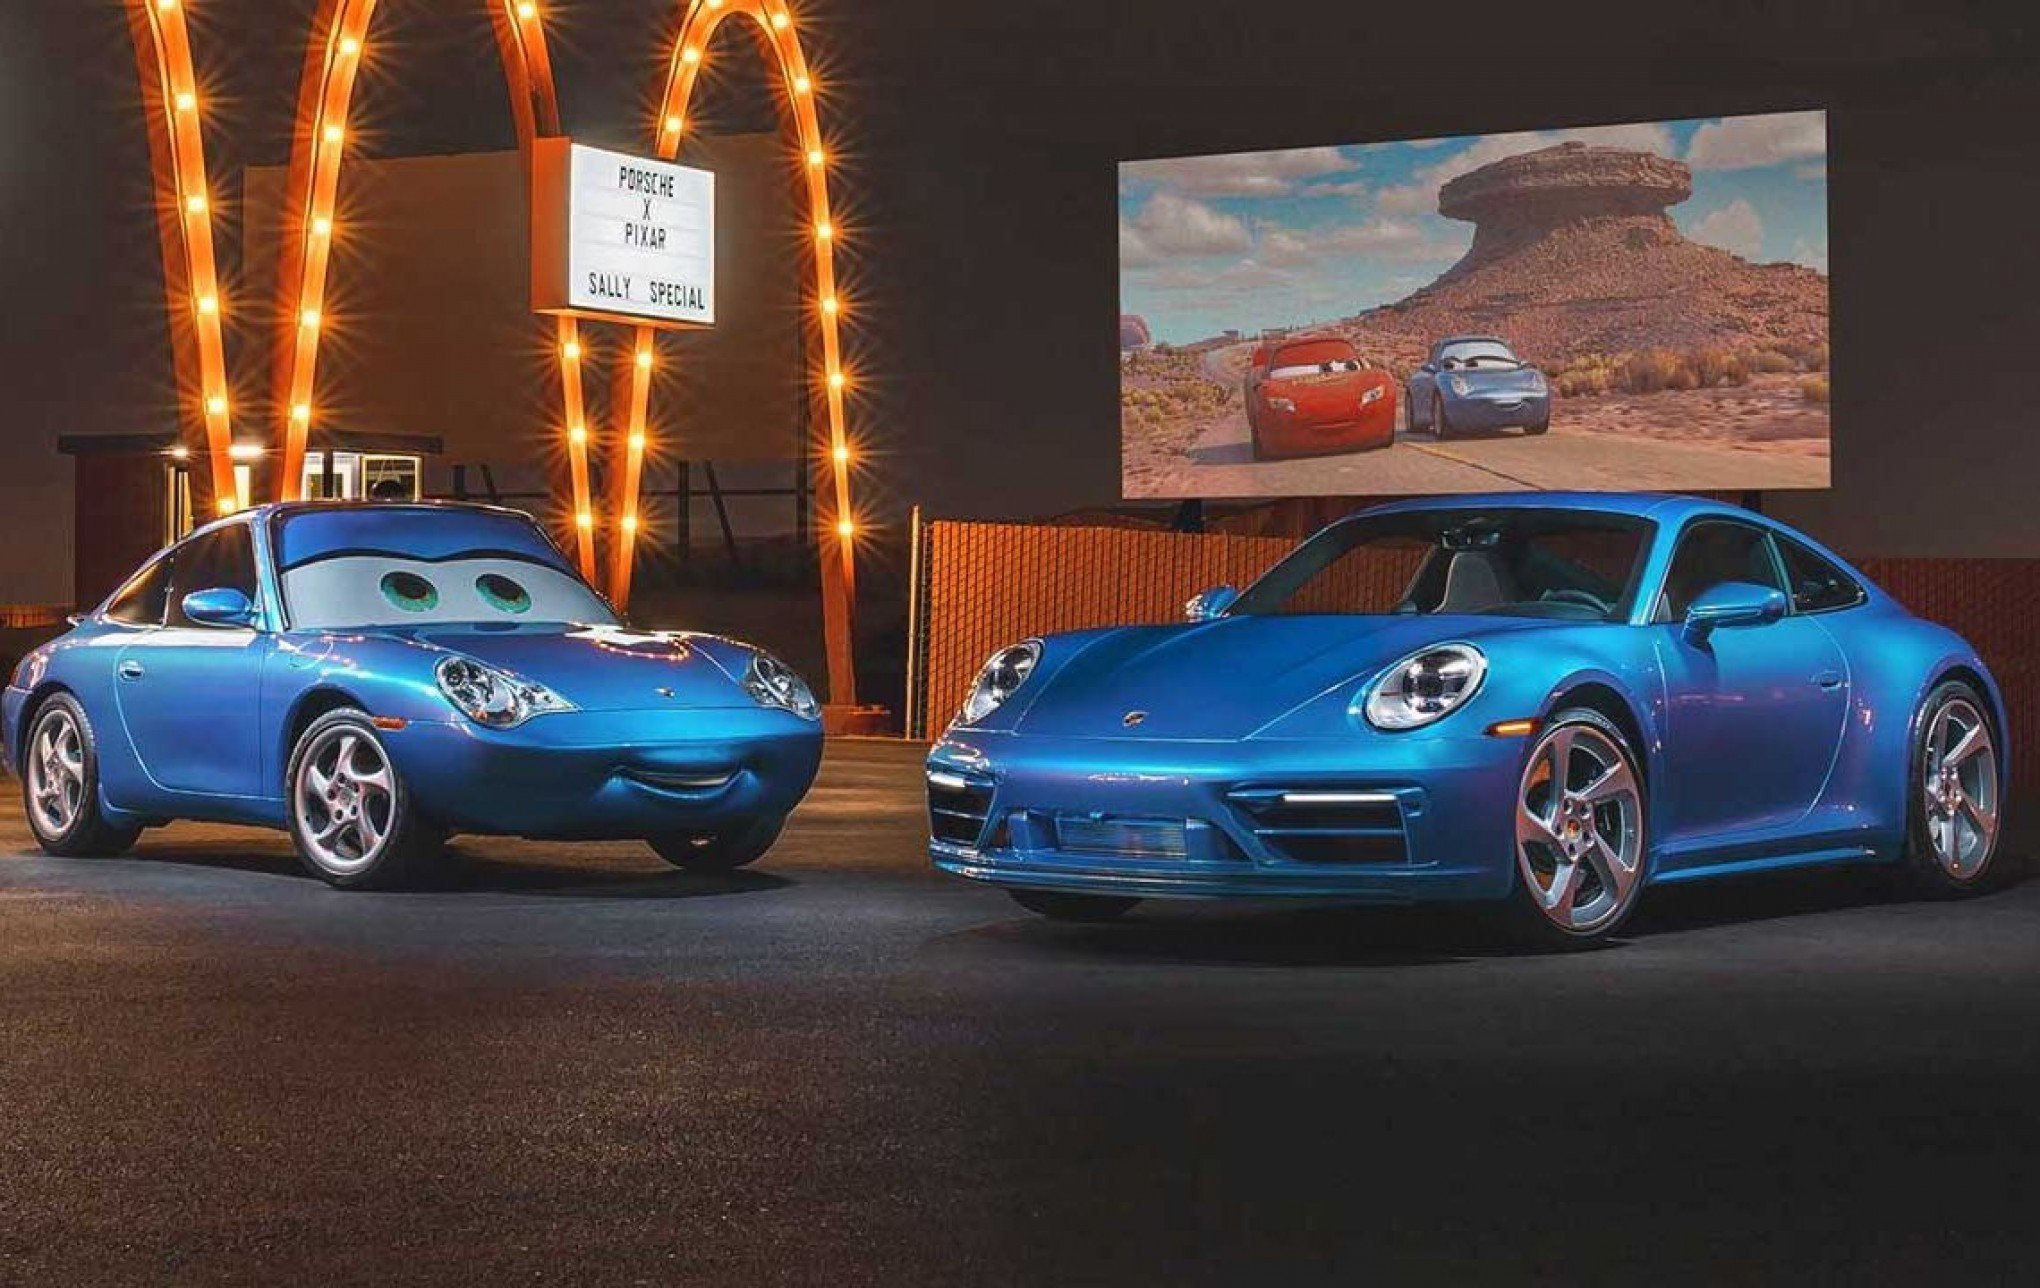 Porsche inspirado no filme 'Carros' vai a leilão para ajudar refugiados -  Mundo - Diário de Canoas